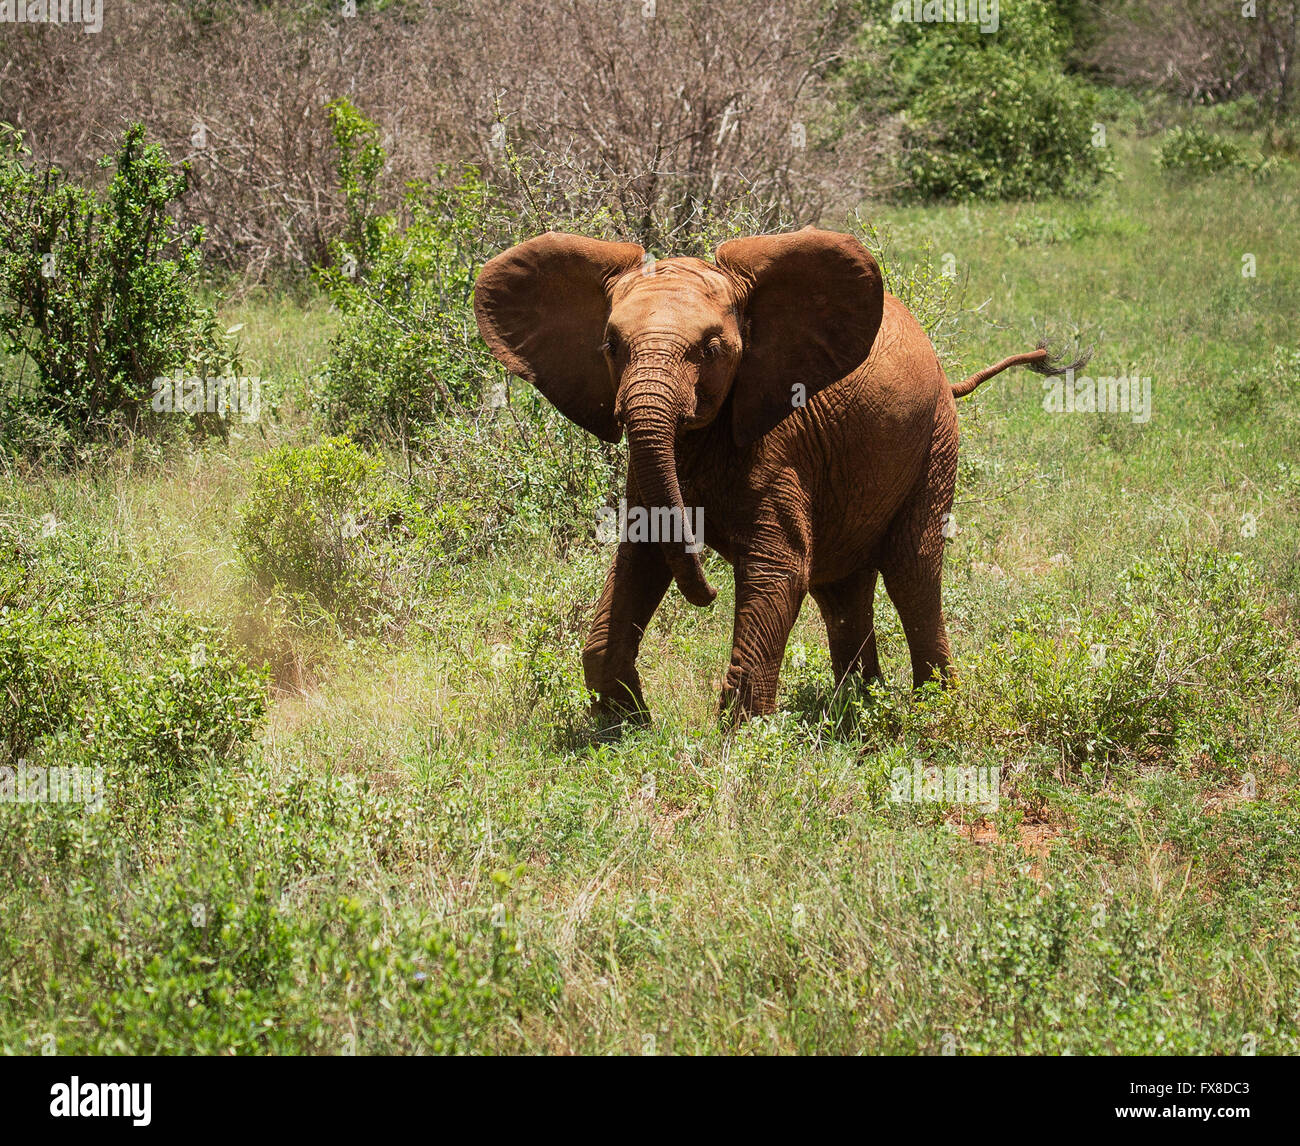 Un jeune taureau éléphant pratiquant une maquette pour écarter les intrus - Parc national de Tsavo East au Kenya Banque D'Images